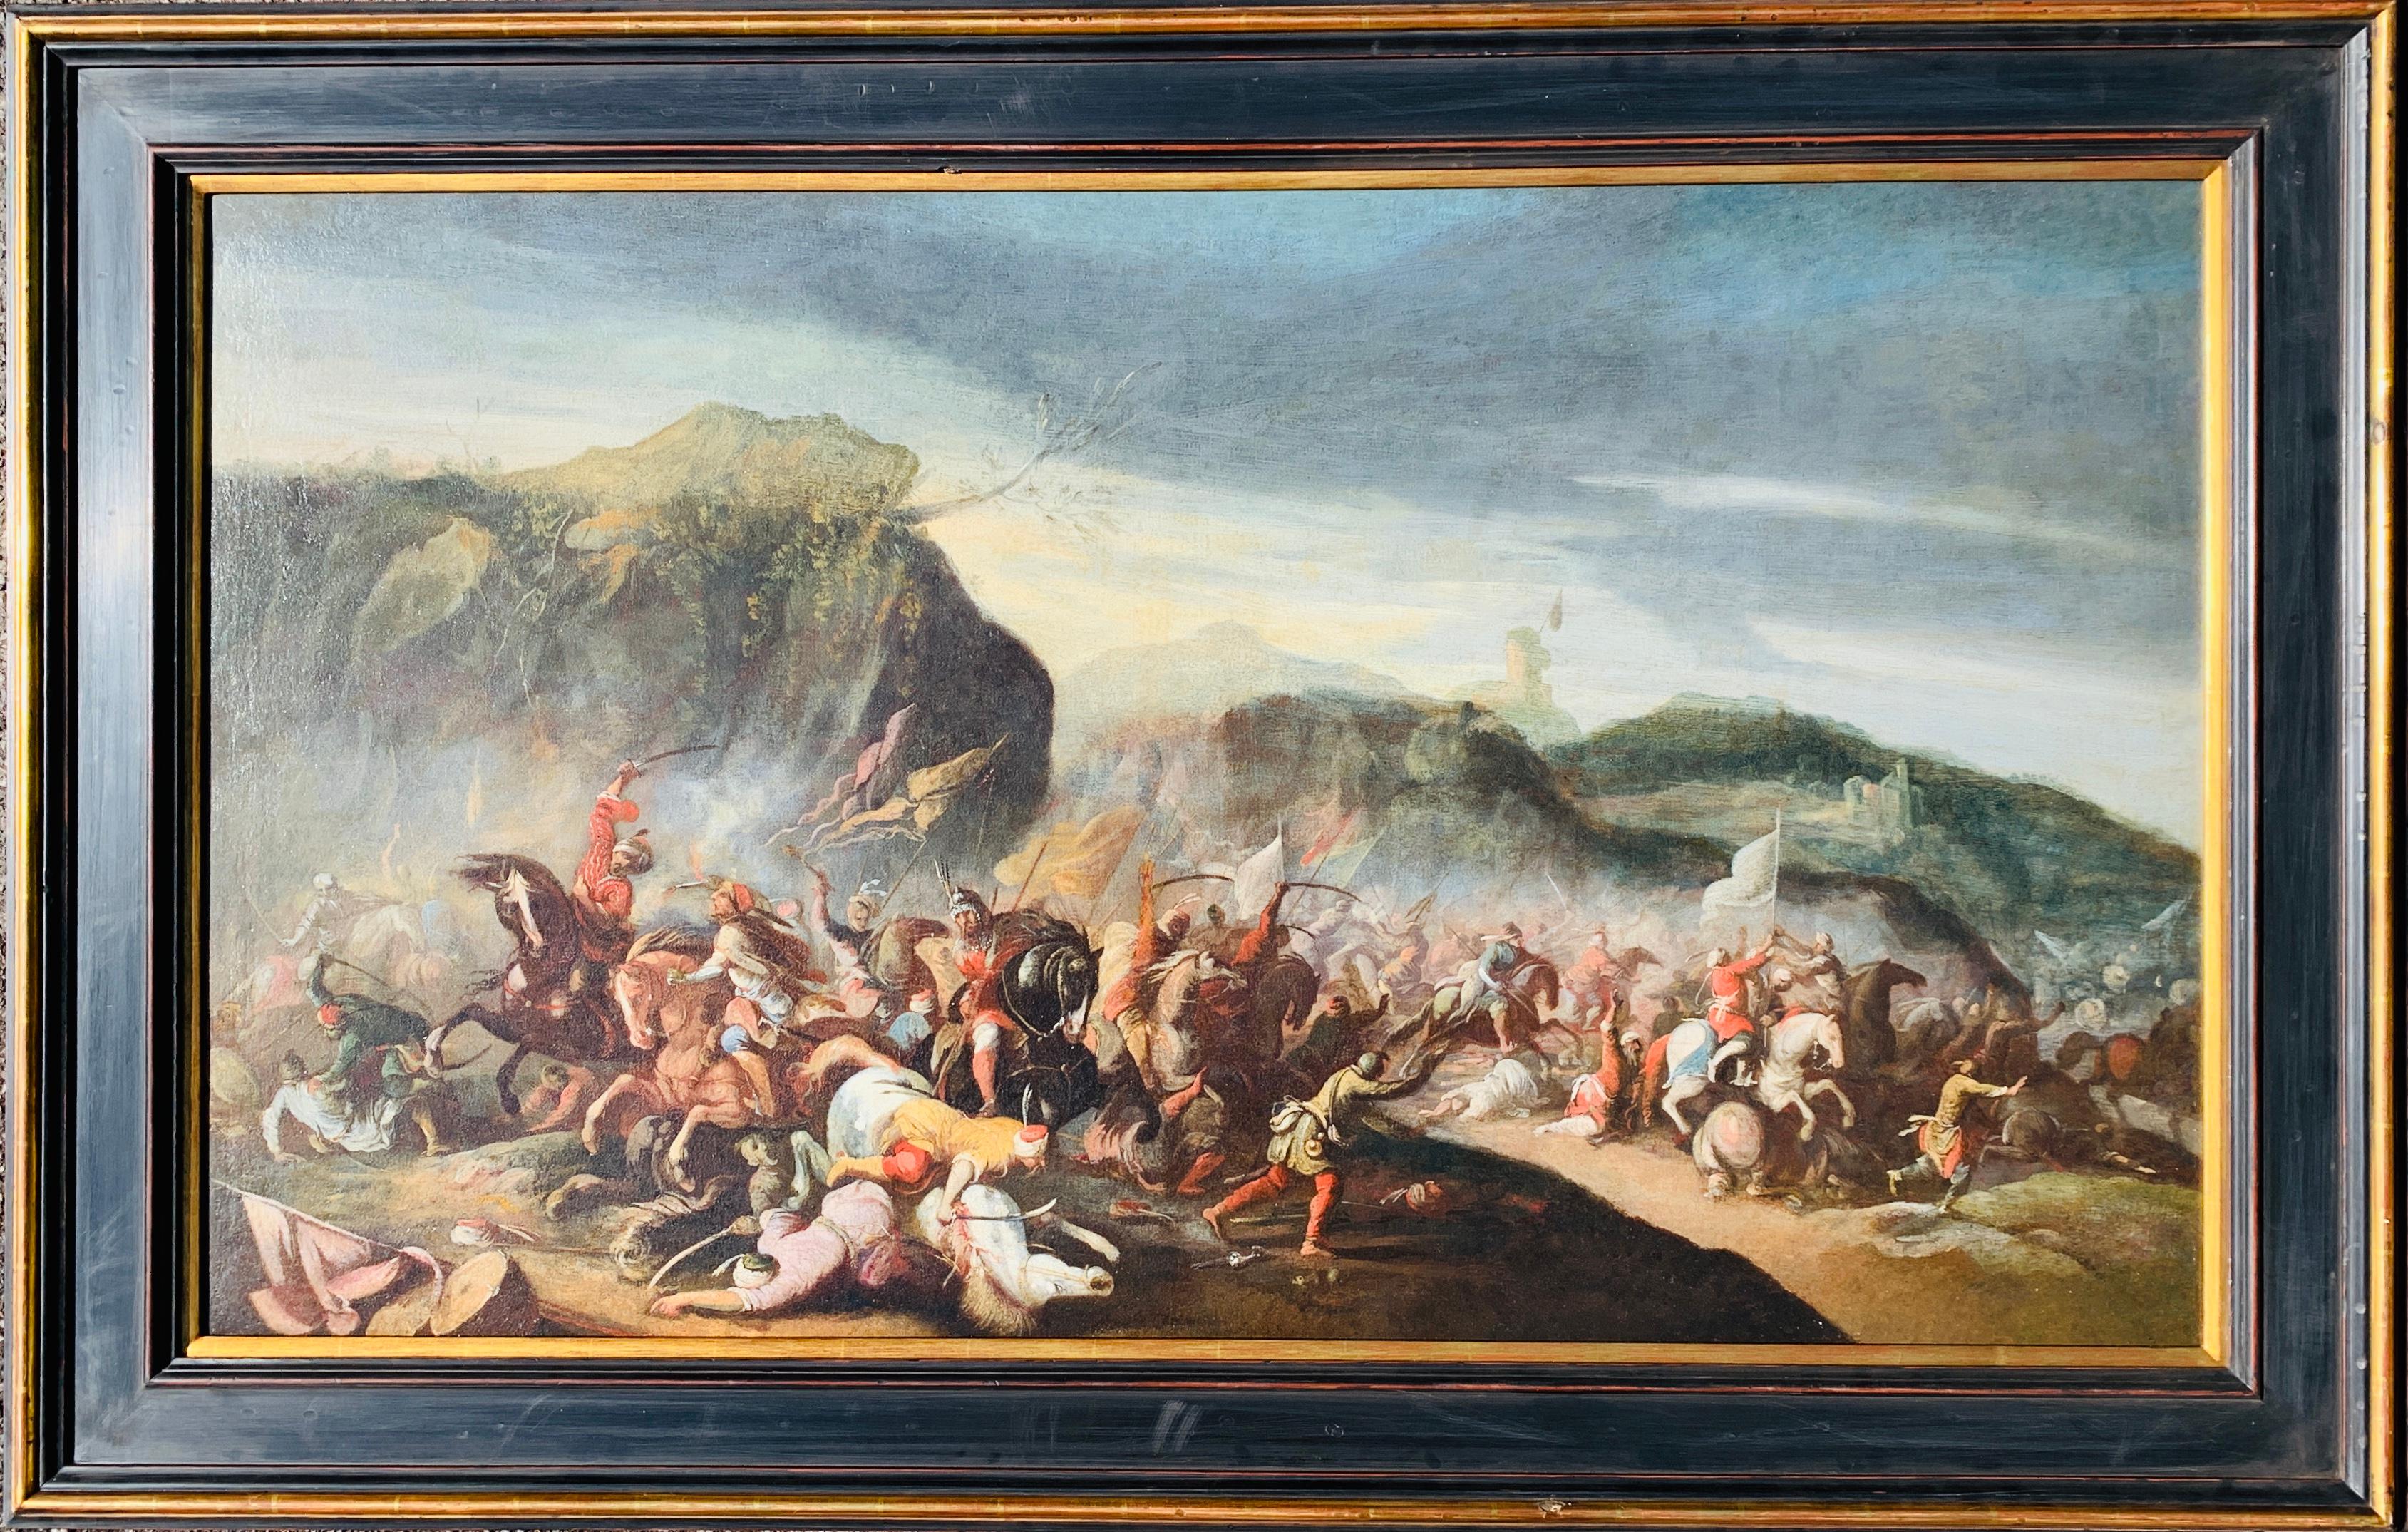 Scène de bataille de chevaux italienne du 17ème siècle entre des guerriers et leur ennemi